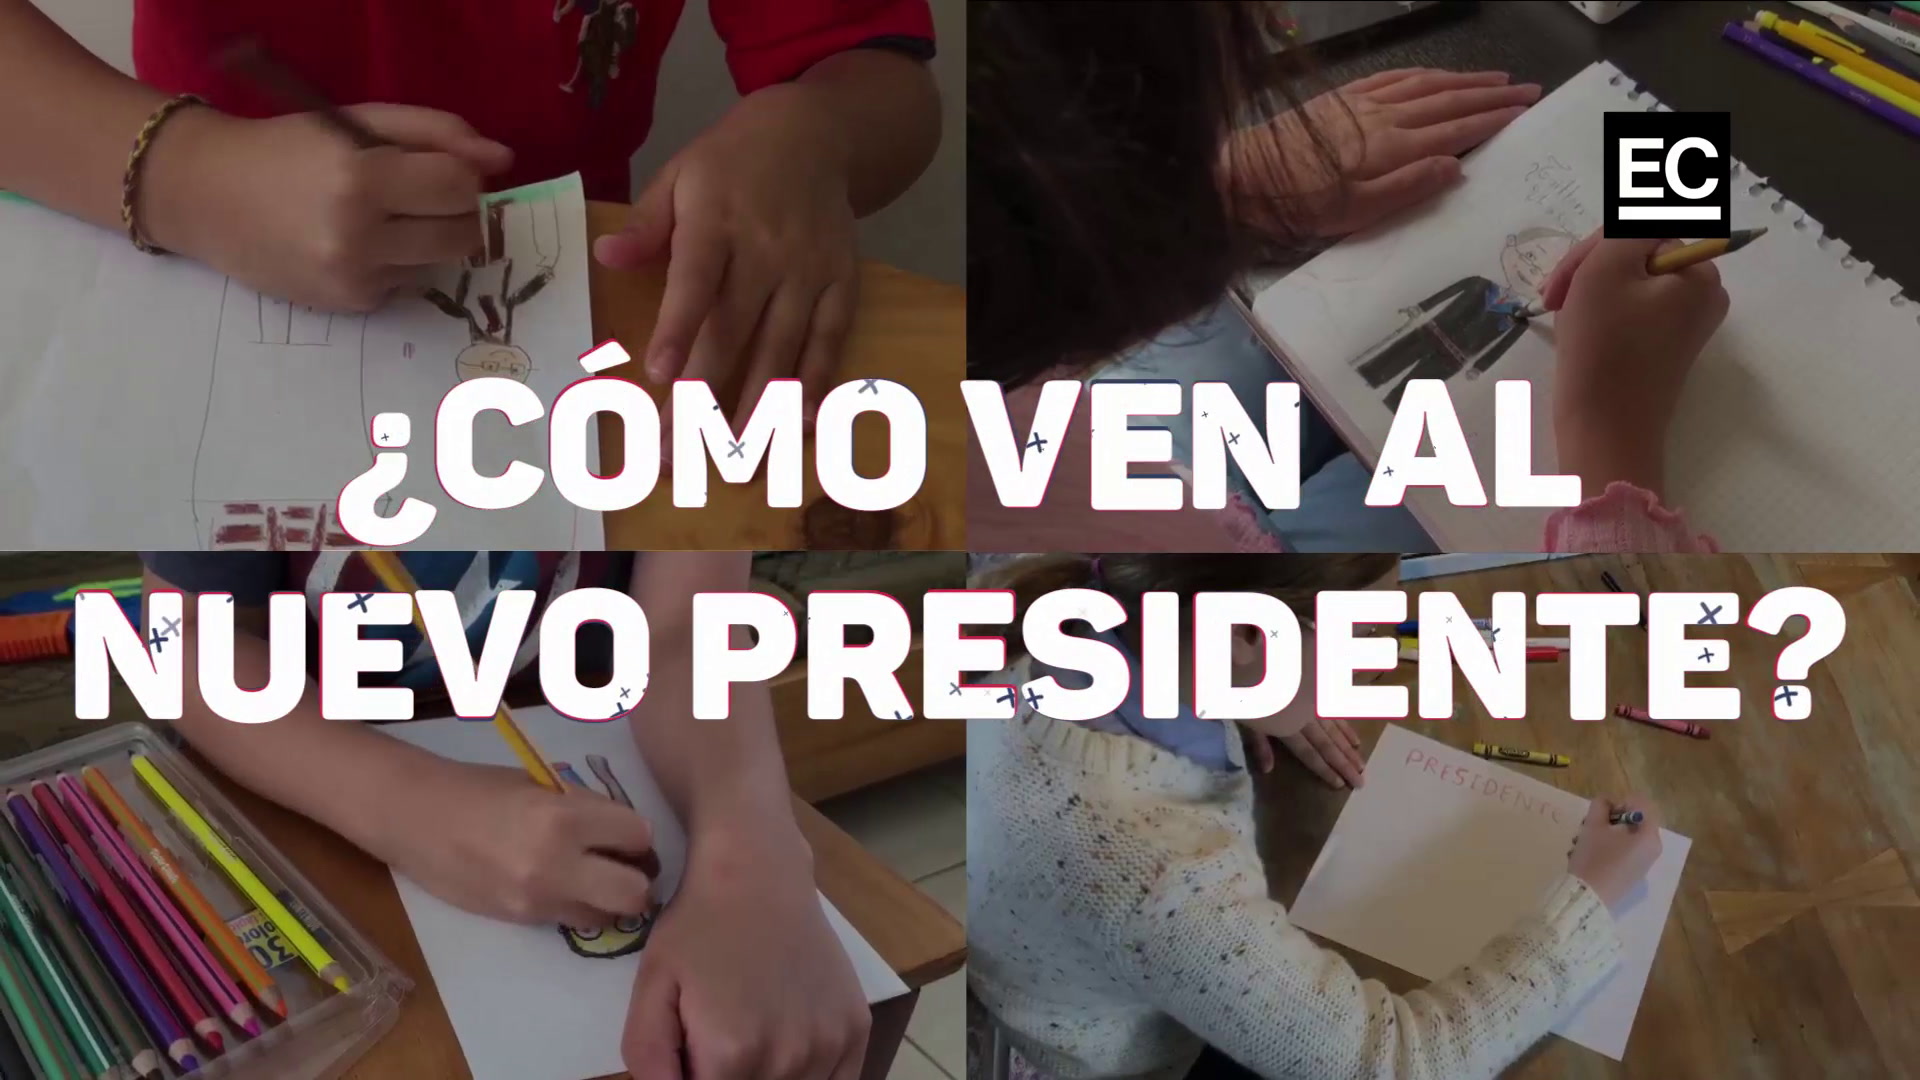 Micaela, Isabela, Martina y Thiago confían en que mejoren los derechos, como la educación de calidad. Este 24 de mayo del 2021 asume Guillermo Lasso la Presidencia de Ecuador.